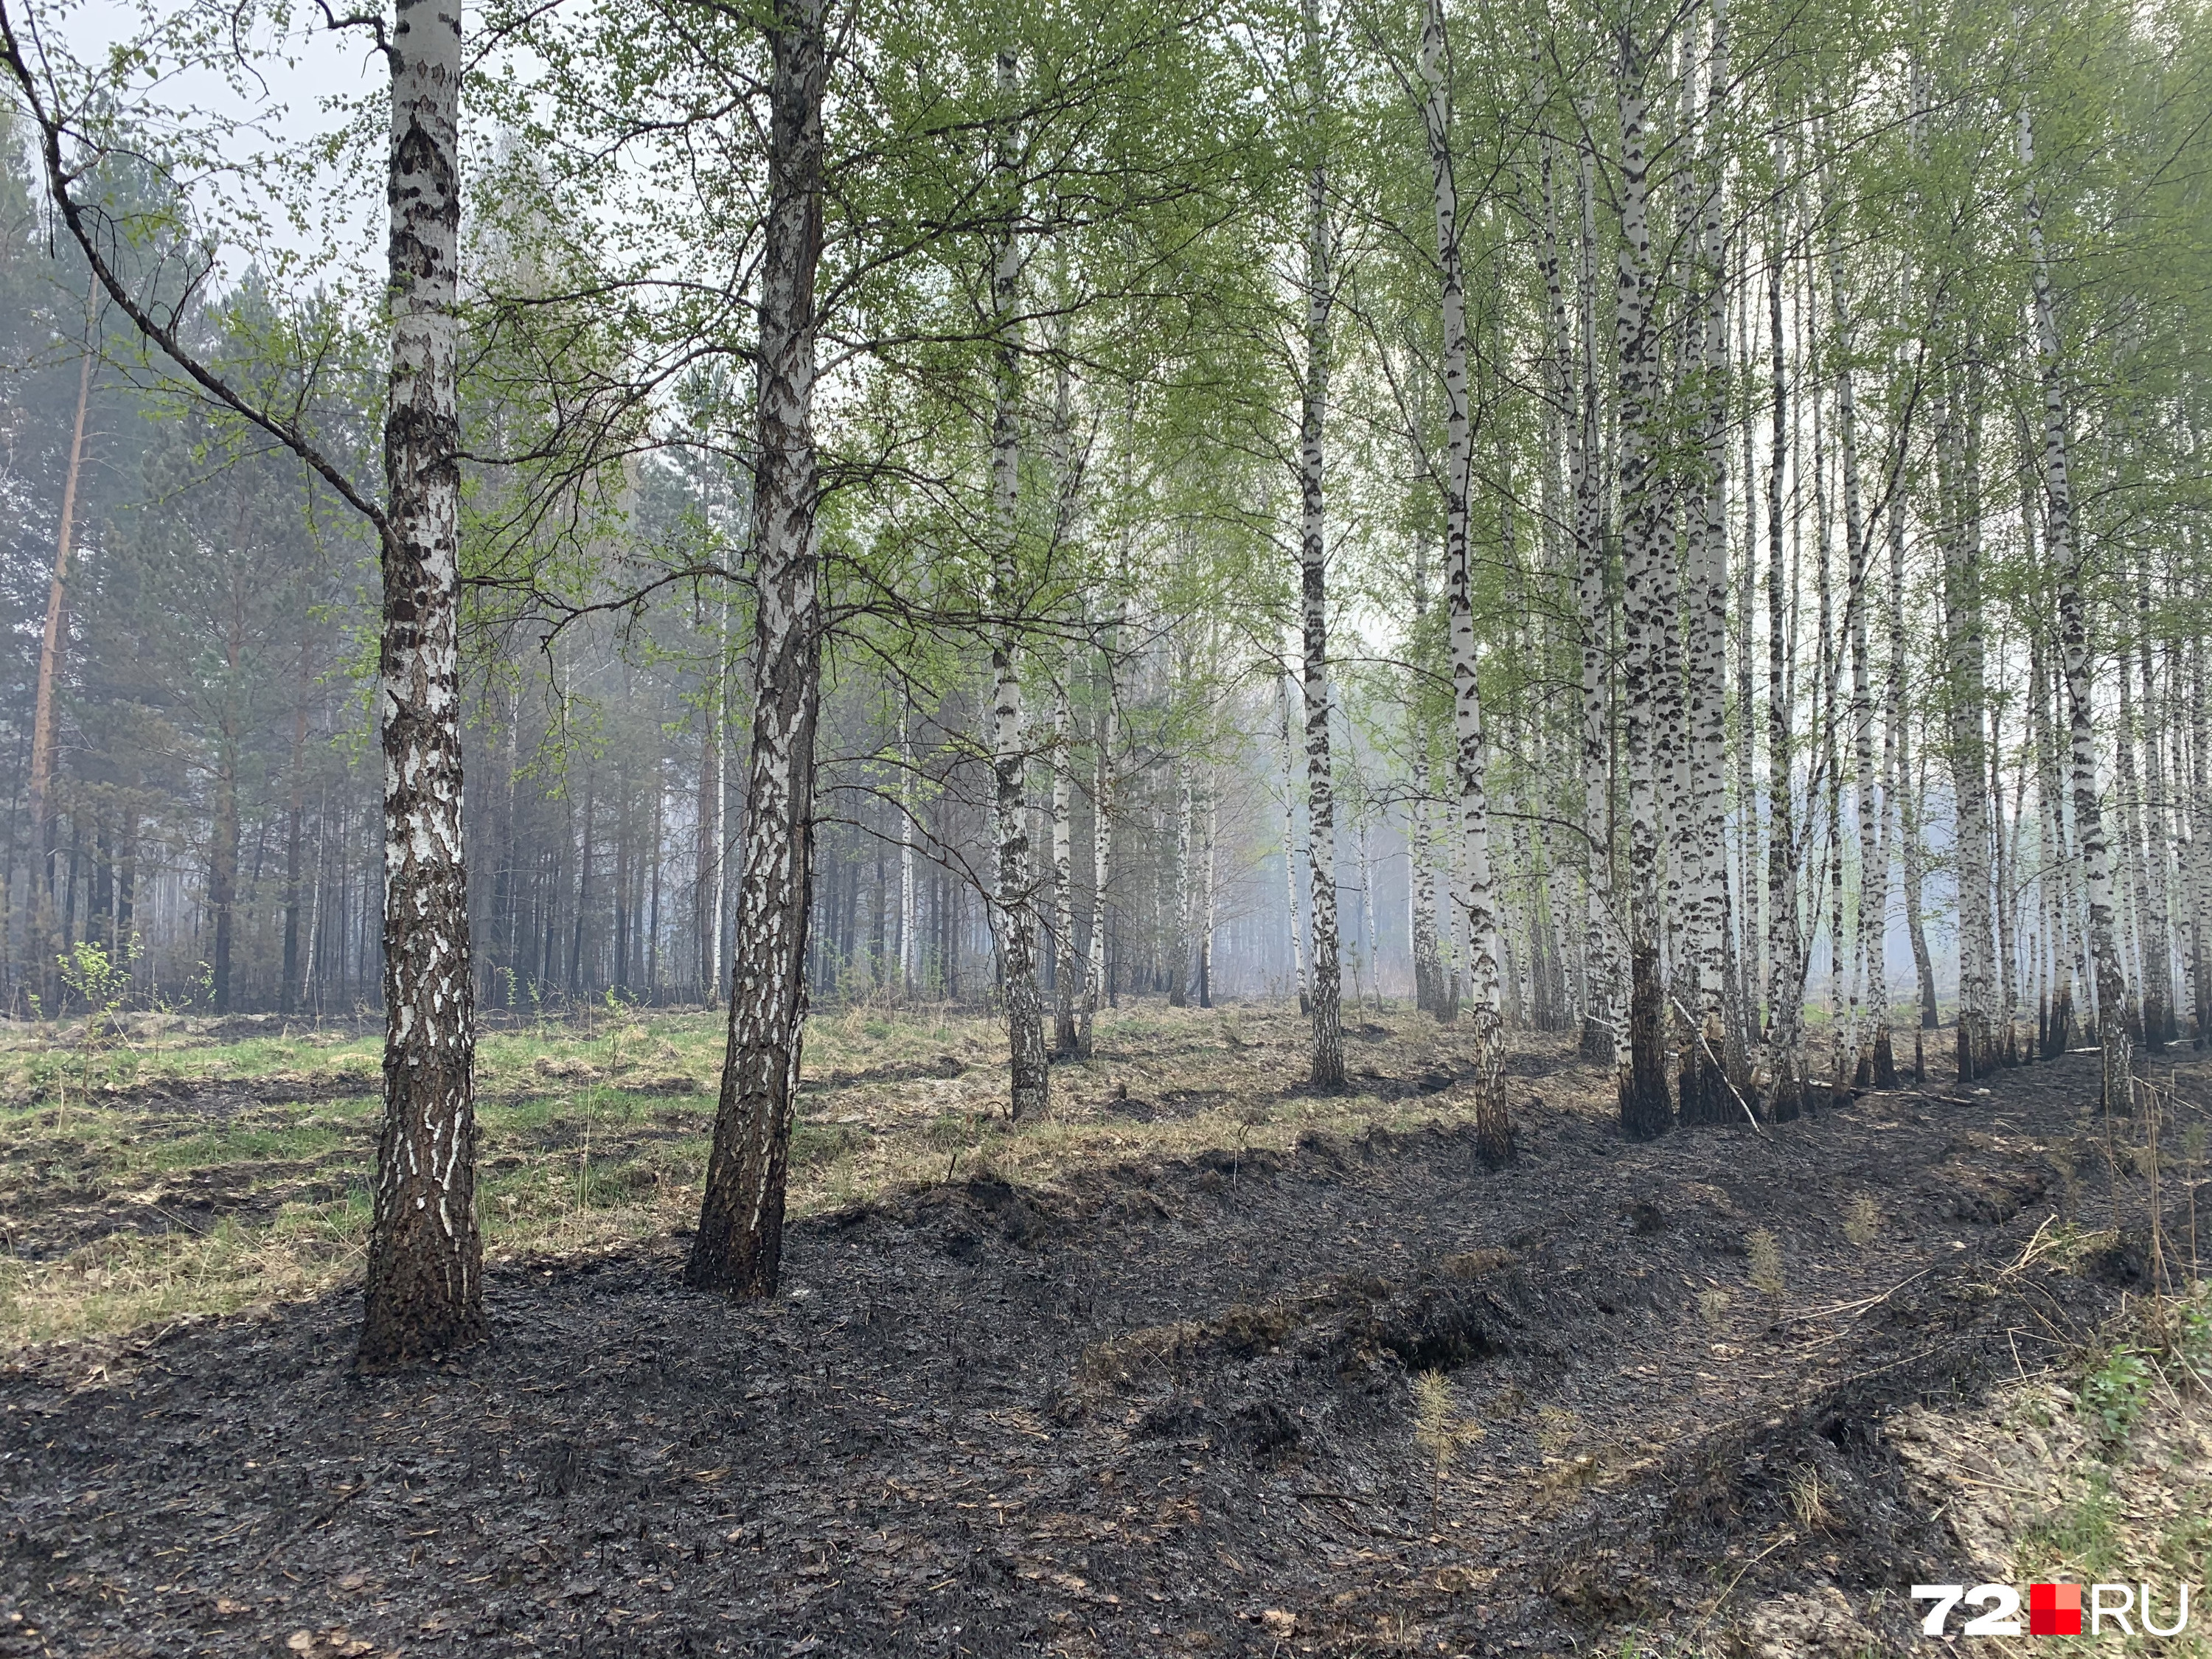 Так лес выглядит там, где уже прошел огонь. Погодные условия способствуют распространению природных пожаров в регионе, также ситуацию может усугубить человек